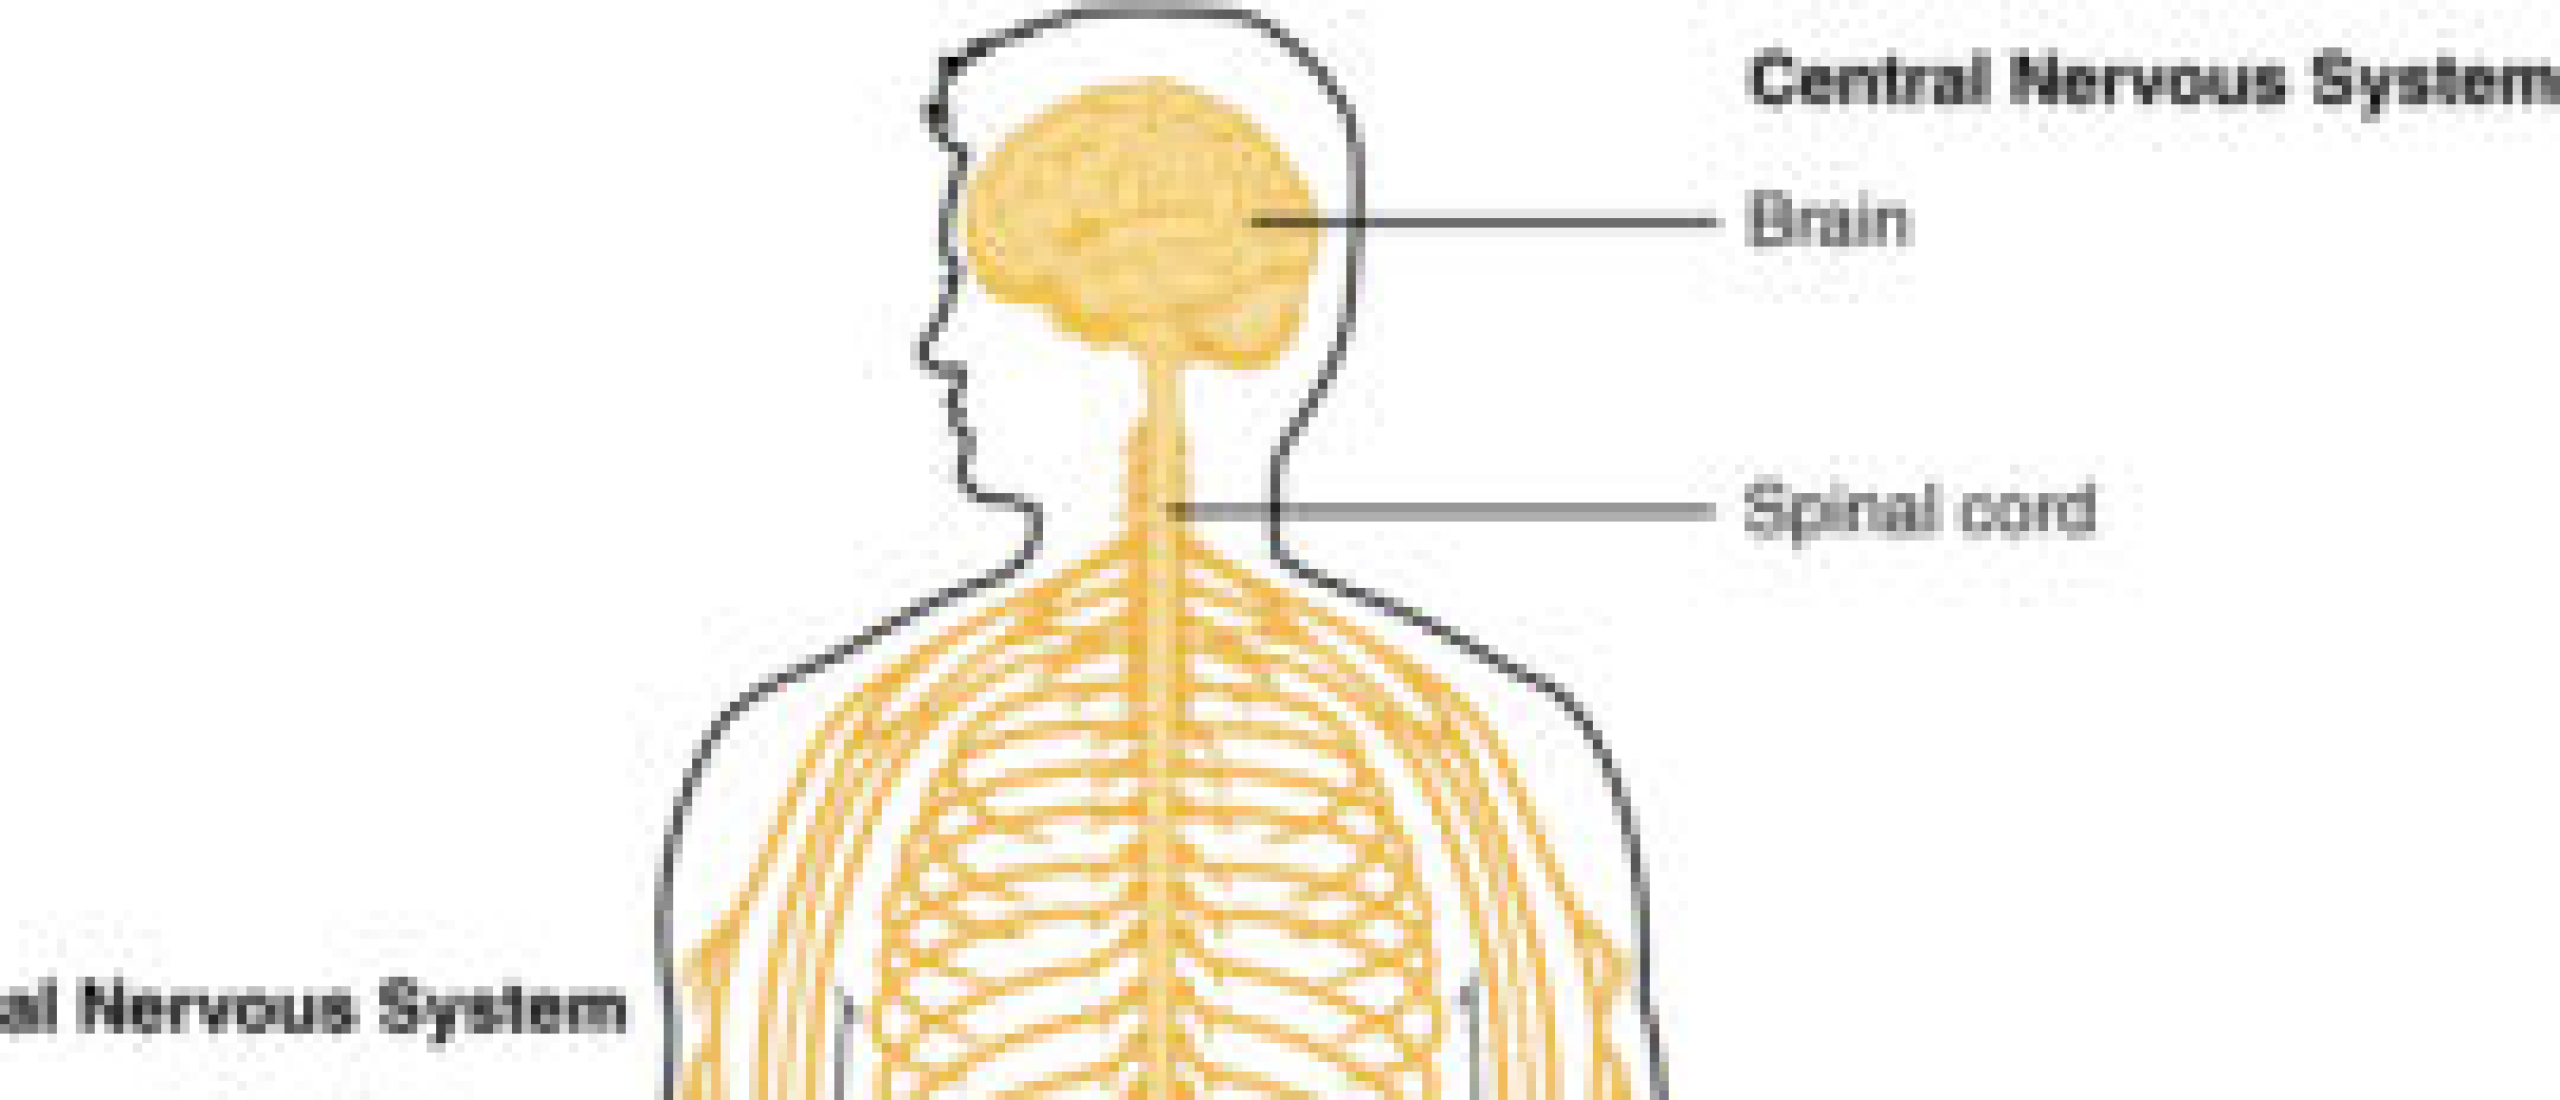 Centraal-zenuwstelsel